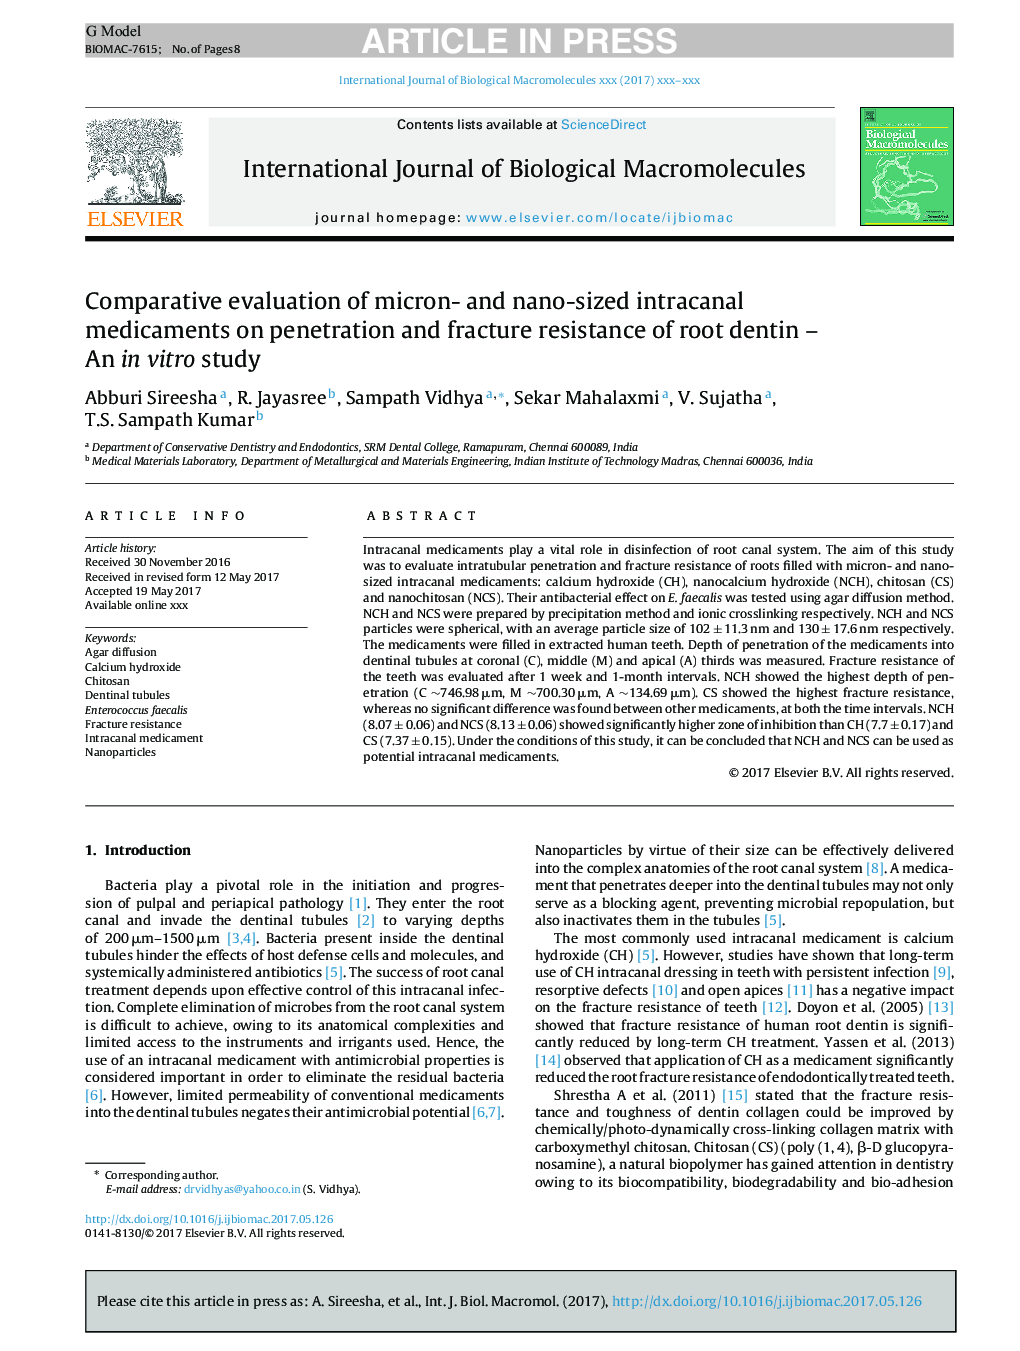 ارزیابی مقایسهای داروهای داخل کانال میکرون و نانو روی مقاومت به نفوذ و شکستگی دنتین ریشه - یک مطالعه درون آزمایشگاهی 